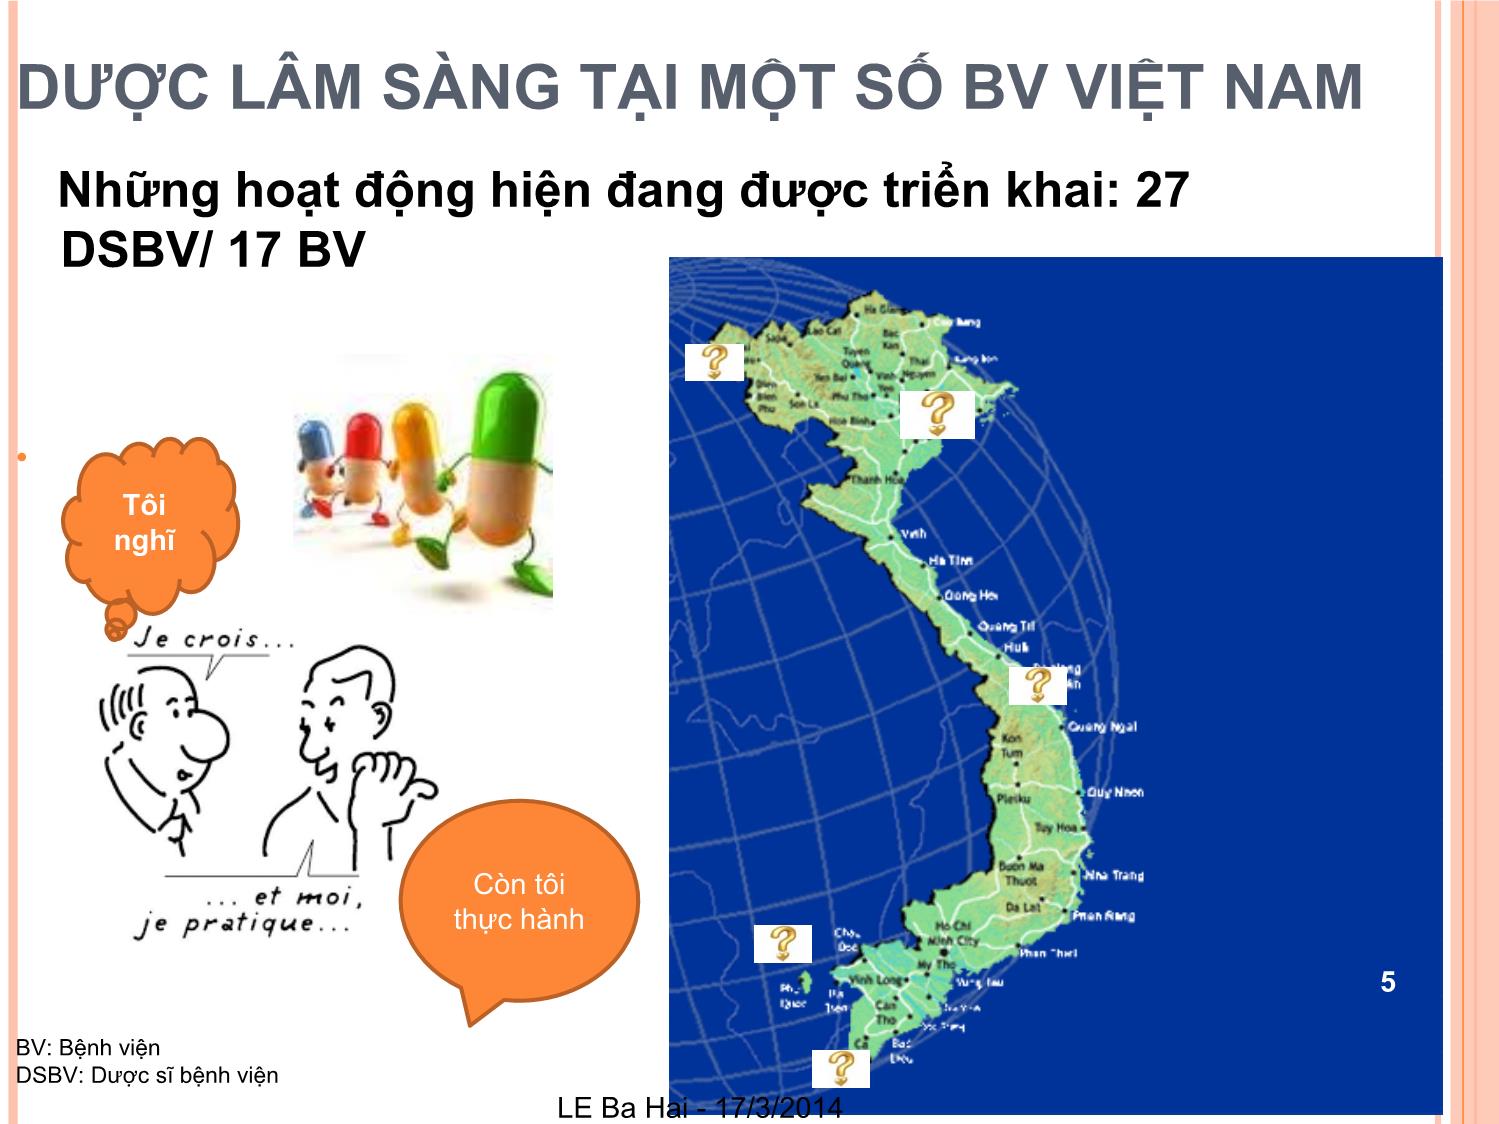 Dược lâm sàng tại bệnh viện Việt Nam: Khảo sát về những dịch vụ đang được triển khai của dược lâm sàng và cơ hội phát triển trang 5